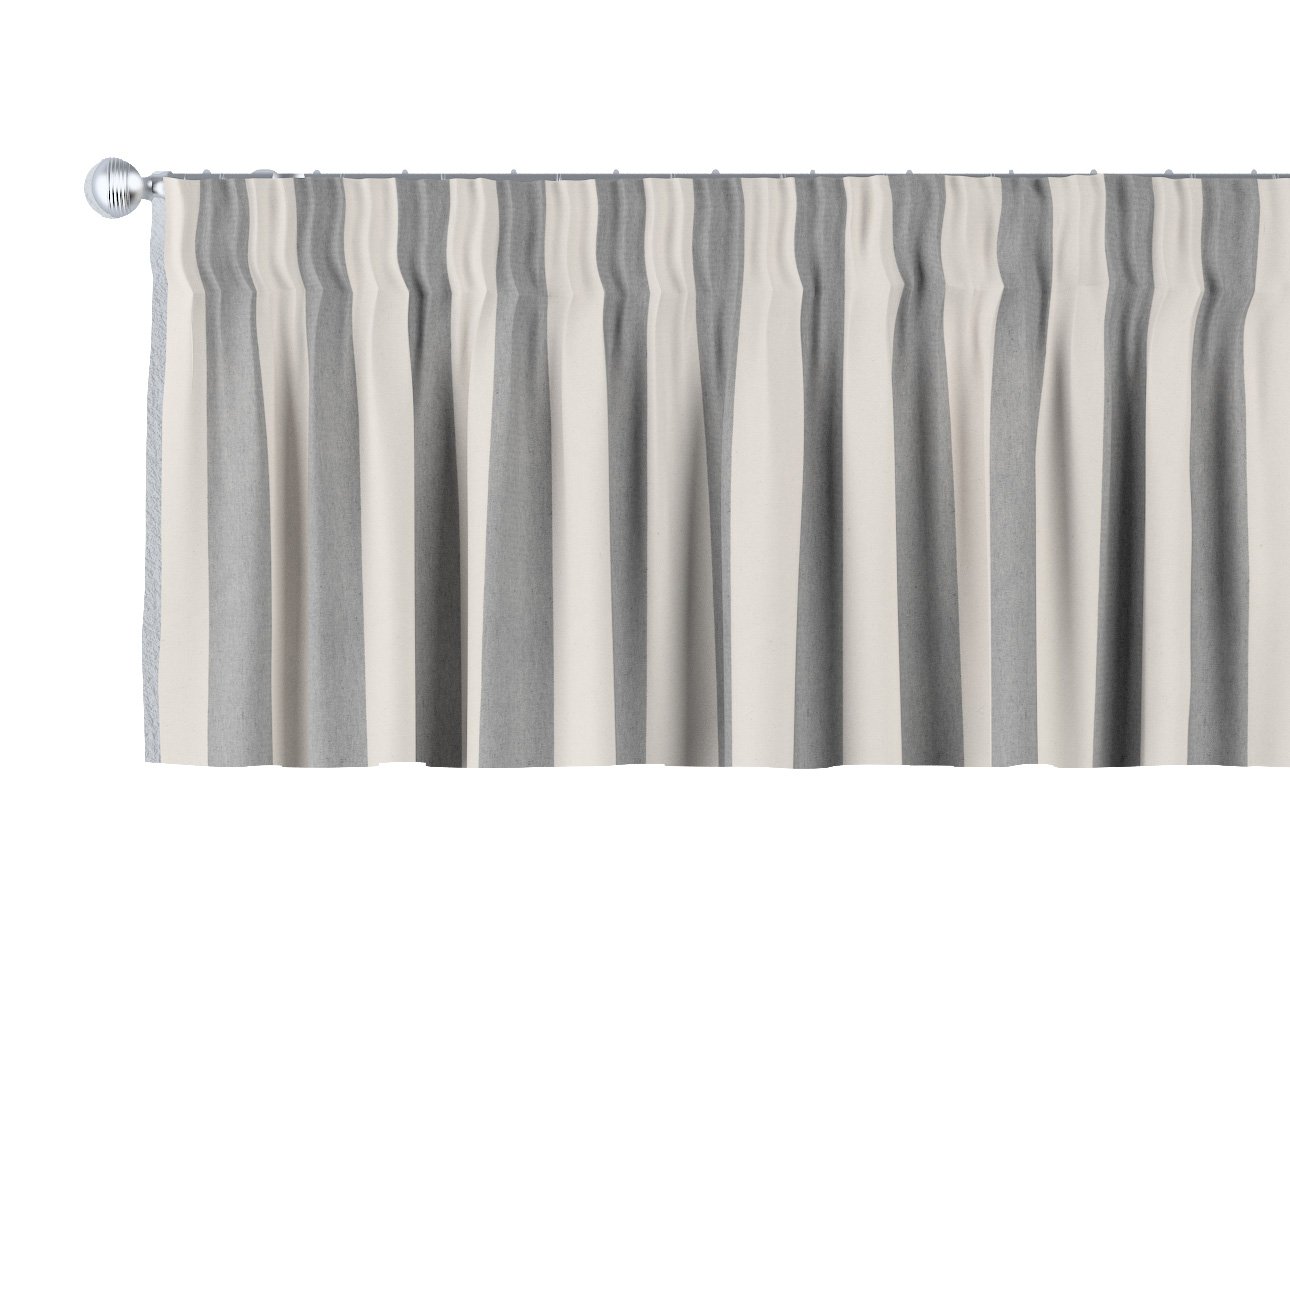 Dekoria Krátky záves na riasiacej páske, biało-szare pionowe pasy, 260 x 40 cm, Quadro, 143-91